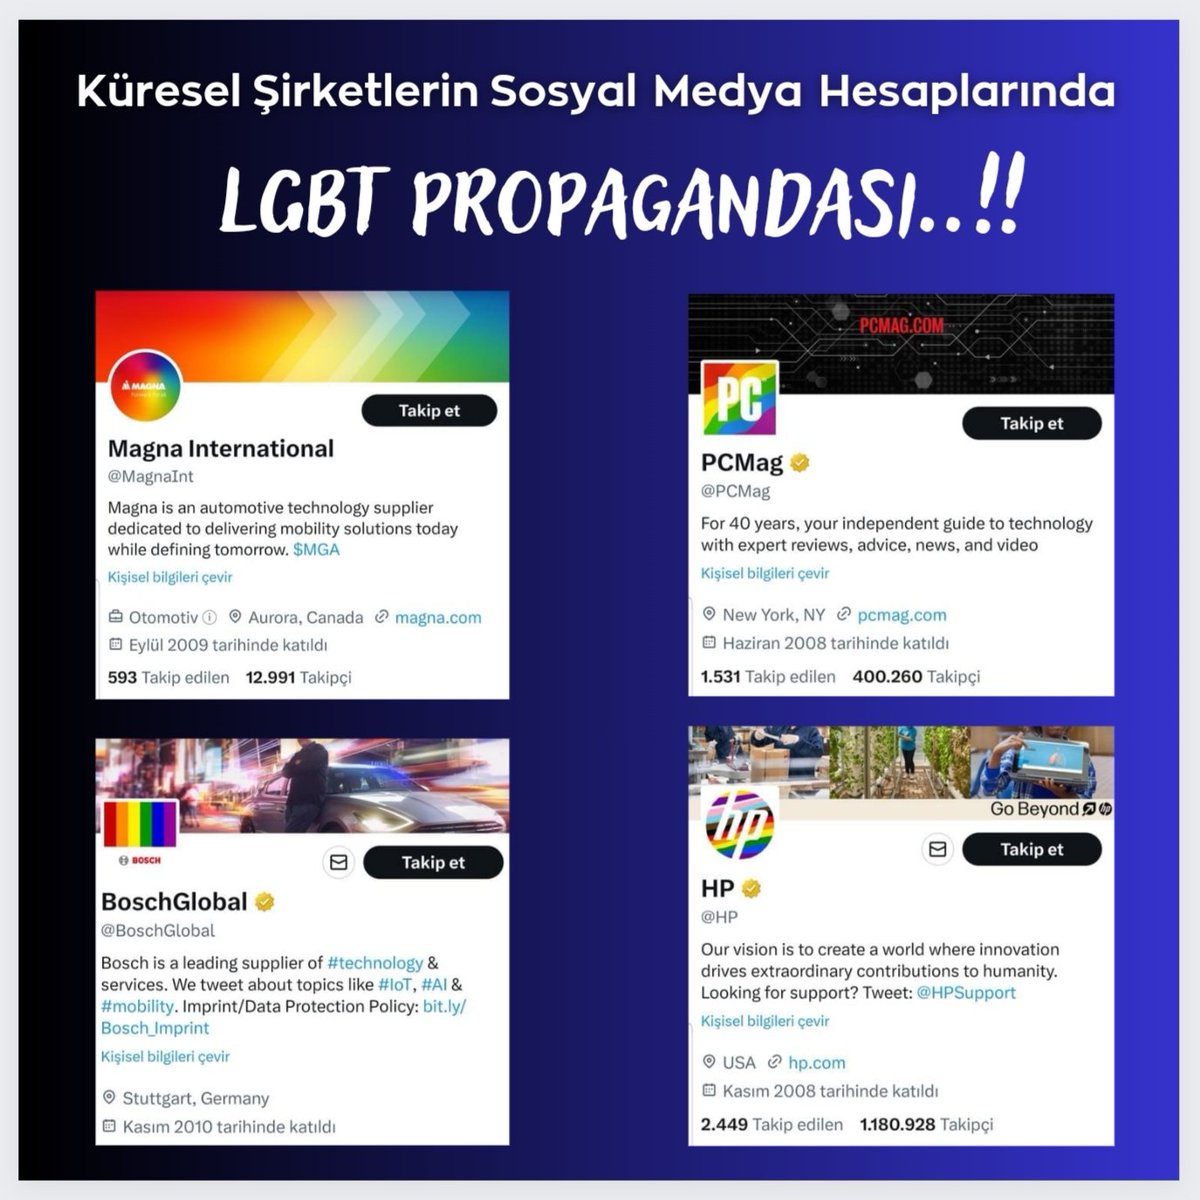 Küresel Şirketler sosyal medya hesaplarında LGBT propagandası yapmaya başladı.

📍HP
📍Bosch Global 
📍PCMag
📍Magna İnternational

Ülkemizi ve gençliğimizi LGBT fitnesine asla kurban etmeyeceğiz..!!!

Şartlar, koşullar her ne olursa olsun LGBT ile mücadele etmeye devam edeceğiz.